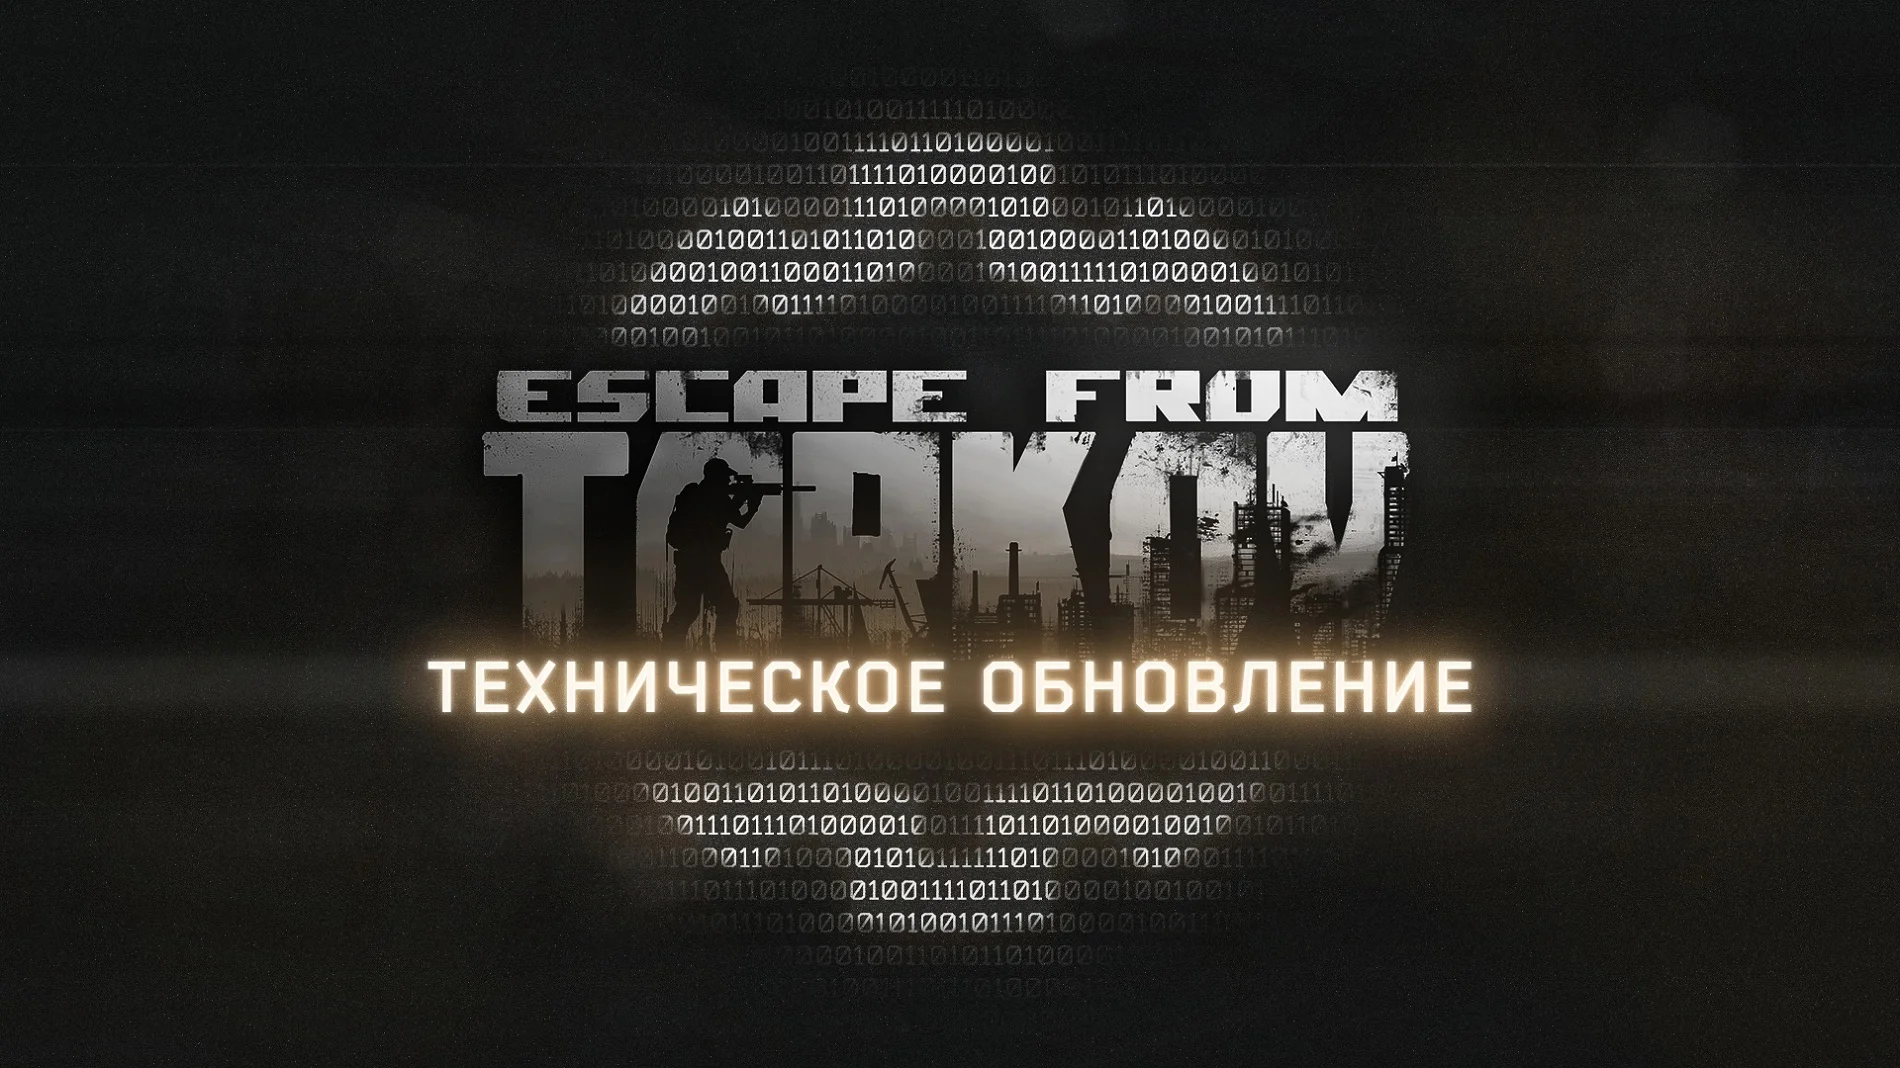 Escape from Tarkov получила техническое обновление с некоторыми исправлениями - фото 1